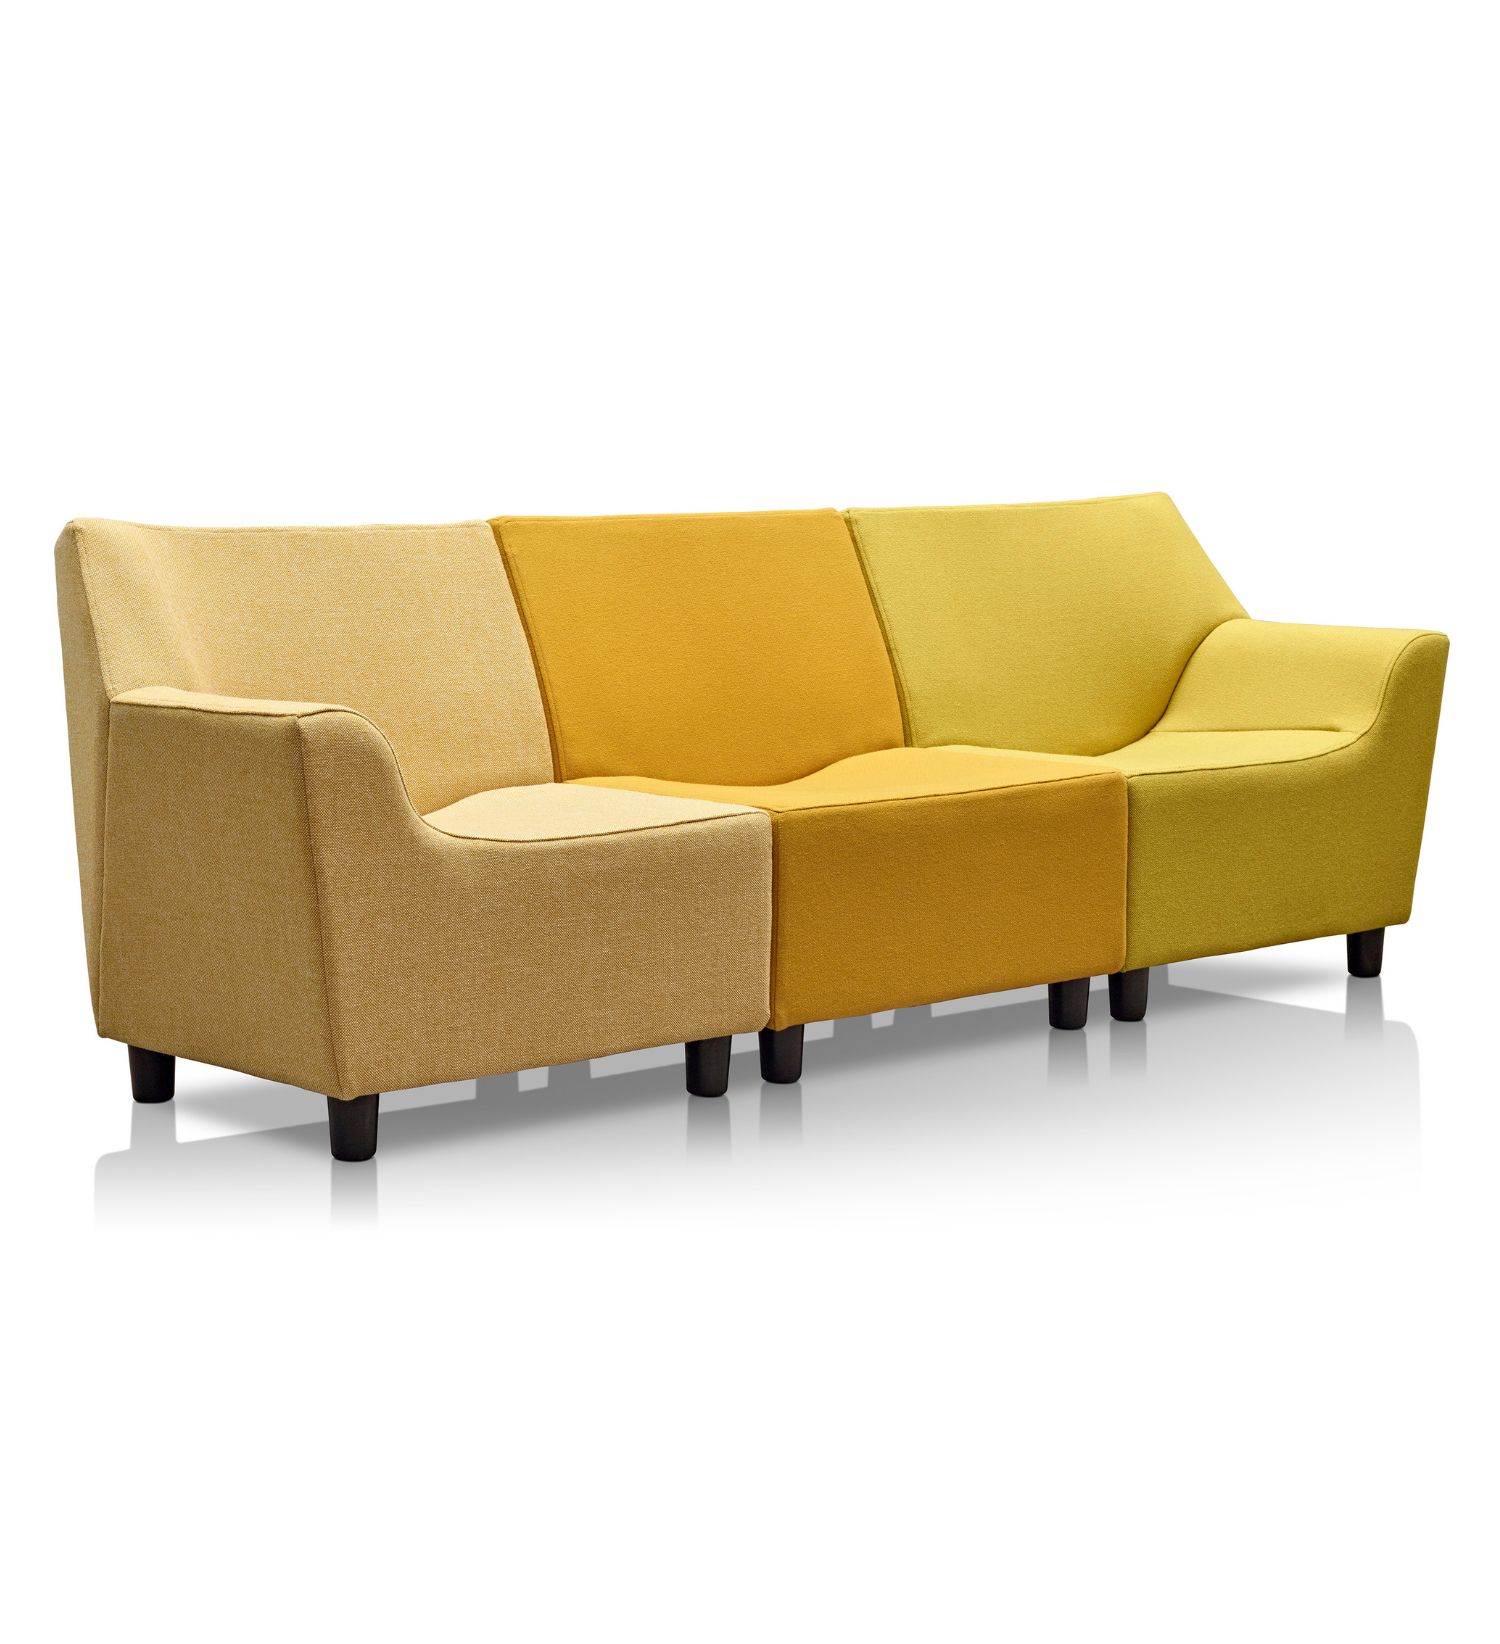 Swoop Lounge Furniture marki Herman Miller